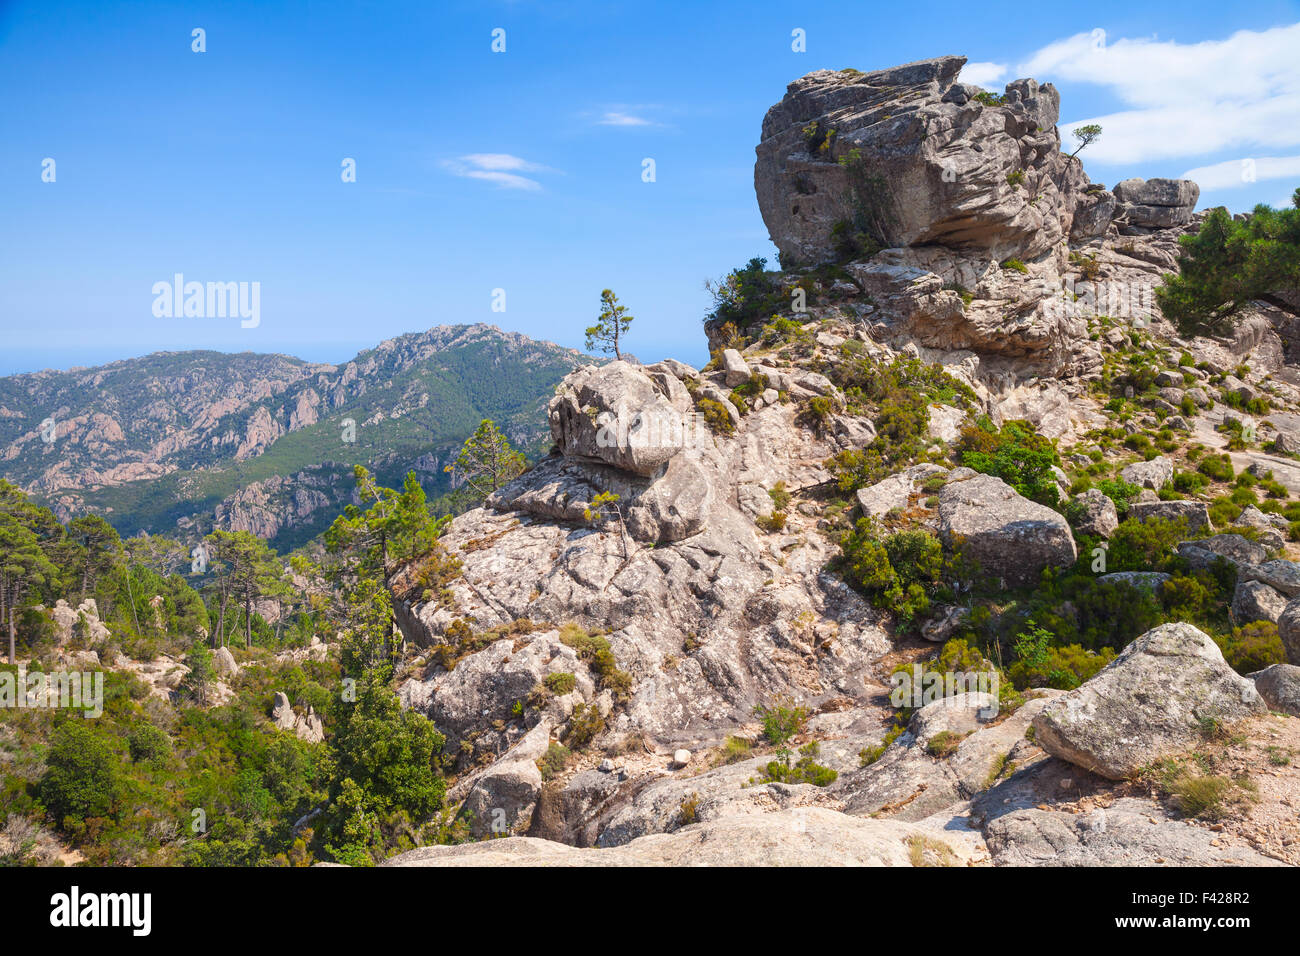 Montagne sauvage avec de petits pins qui poussent sur les roches. La partie sud de la Corse, France Banque D'Images